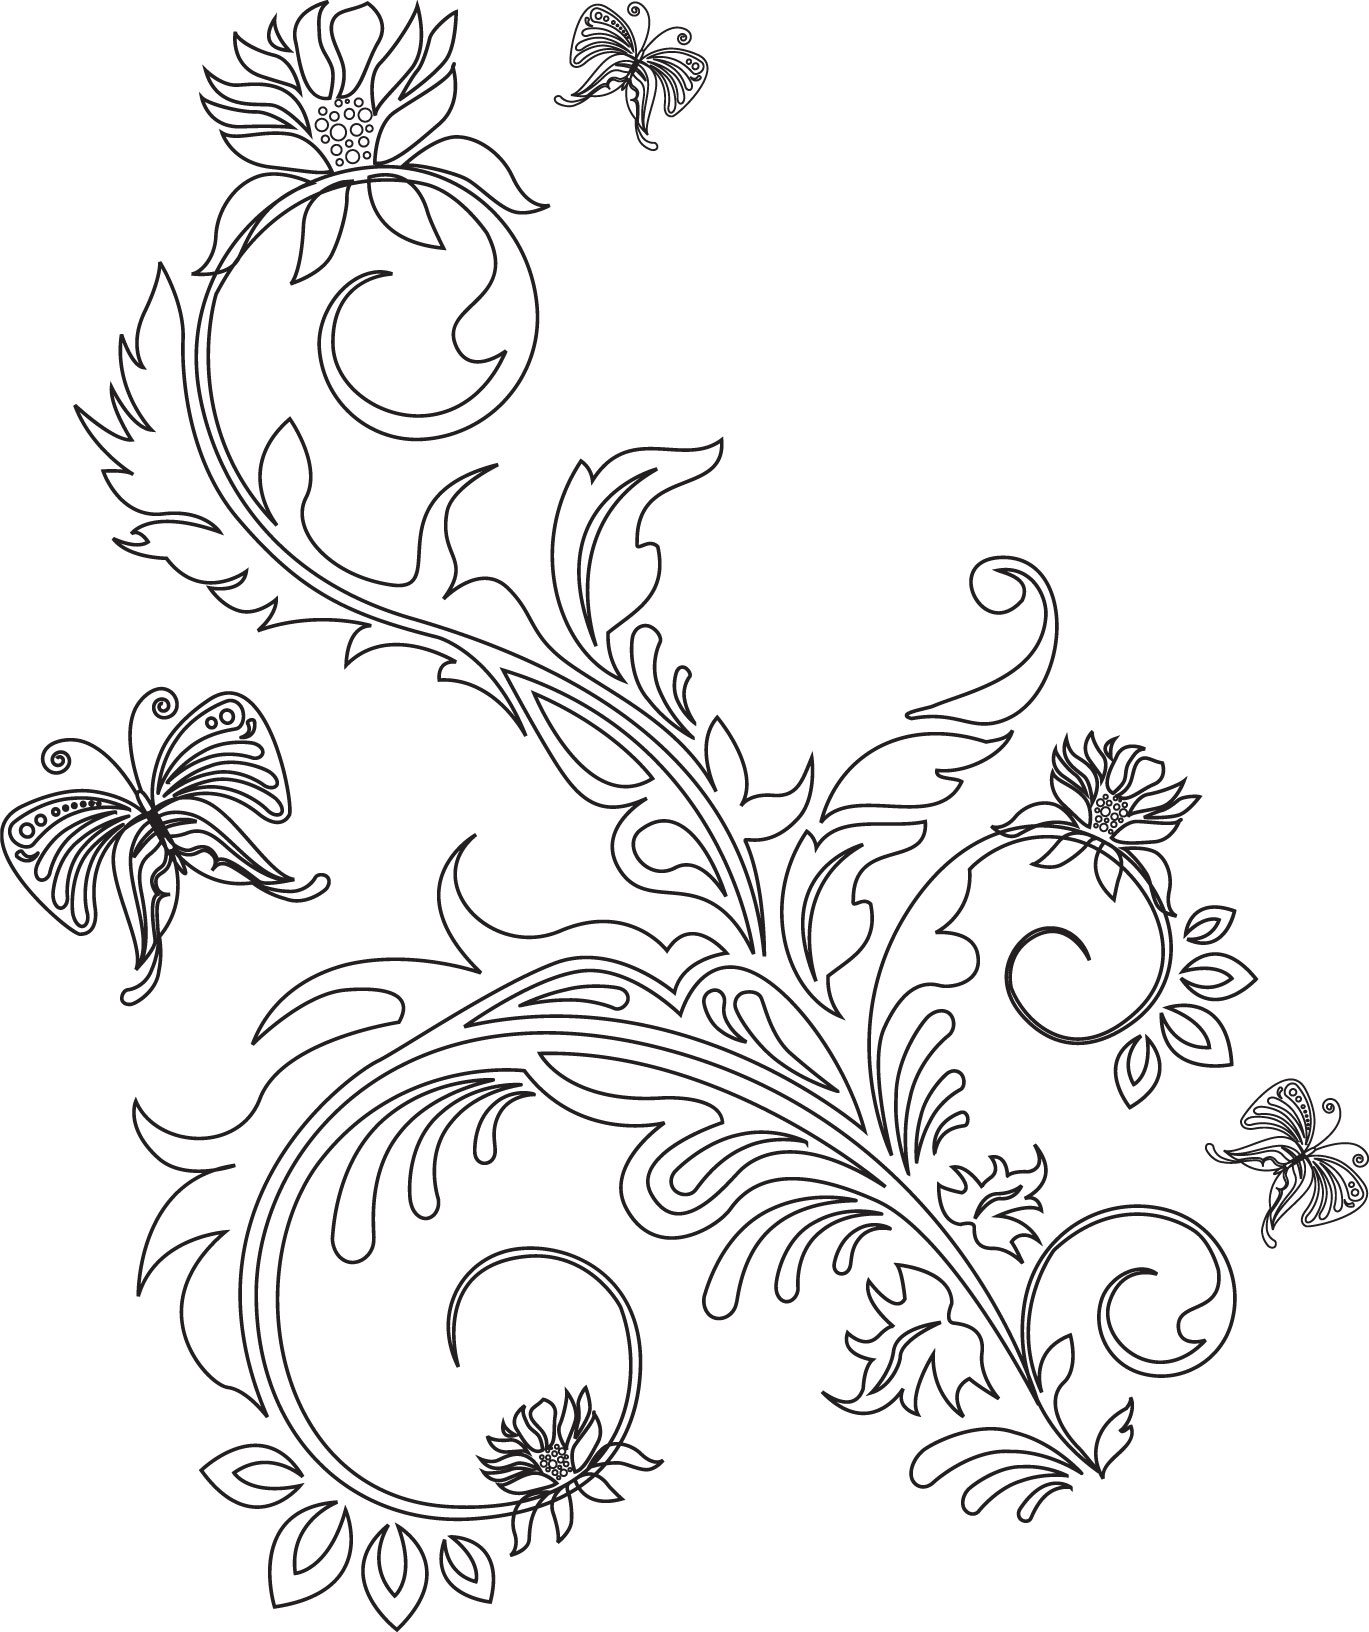 花のイラスト フリー素材 白黒 モノクロno 563 葉 花 蝶